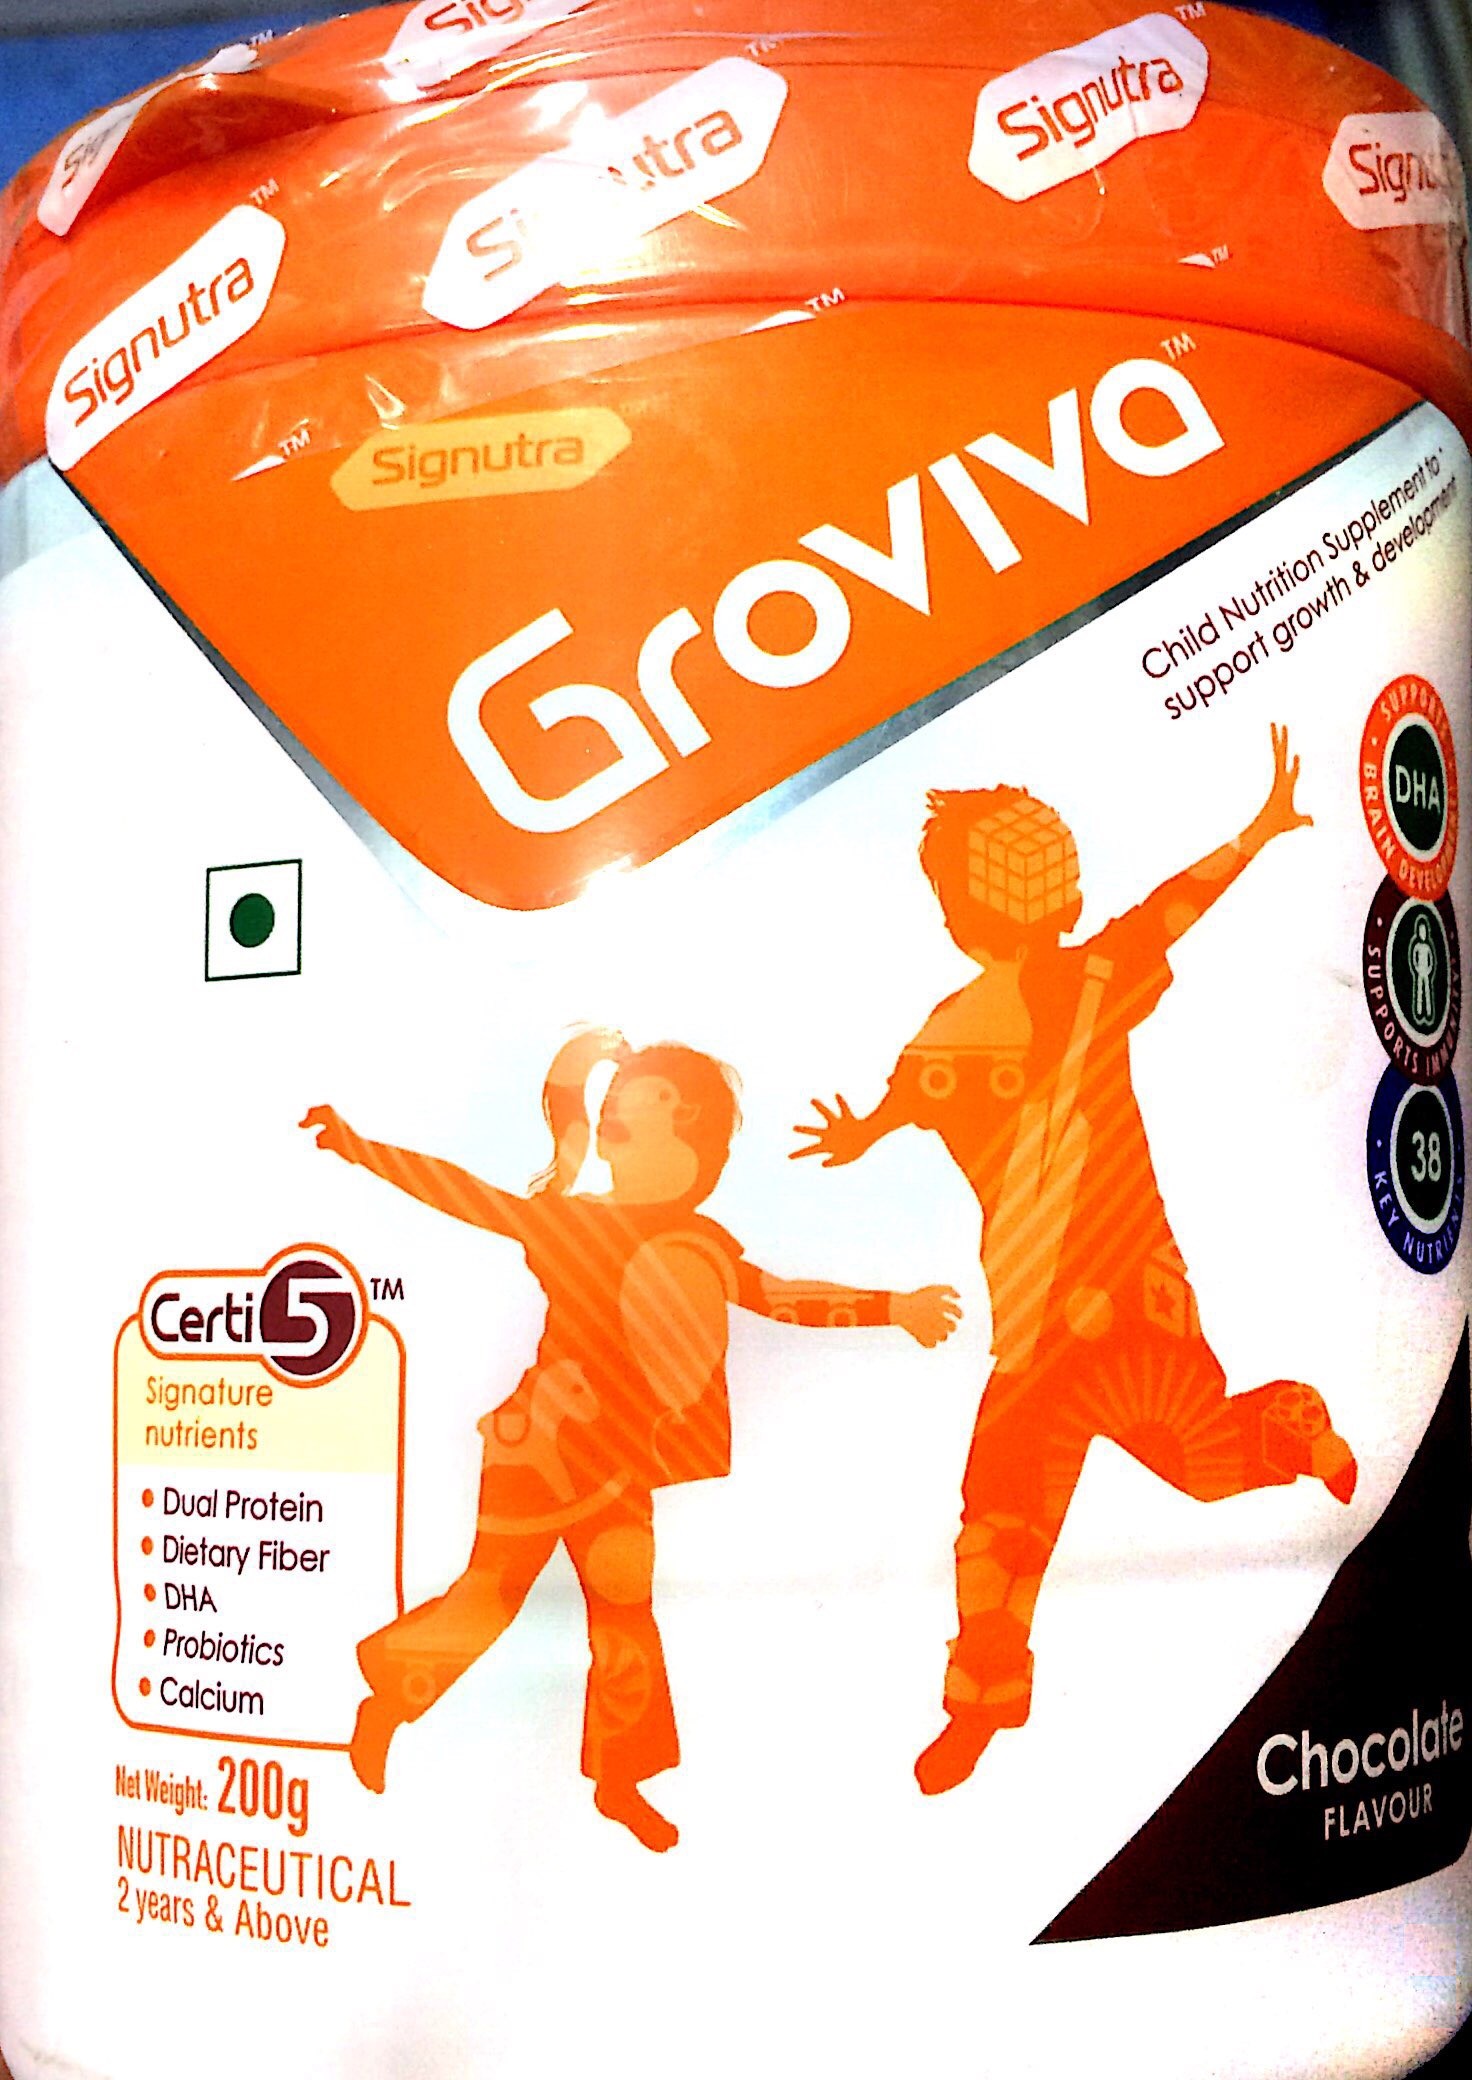 Groviva-200gram-chocolate Flavour